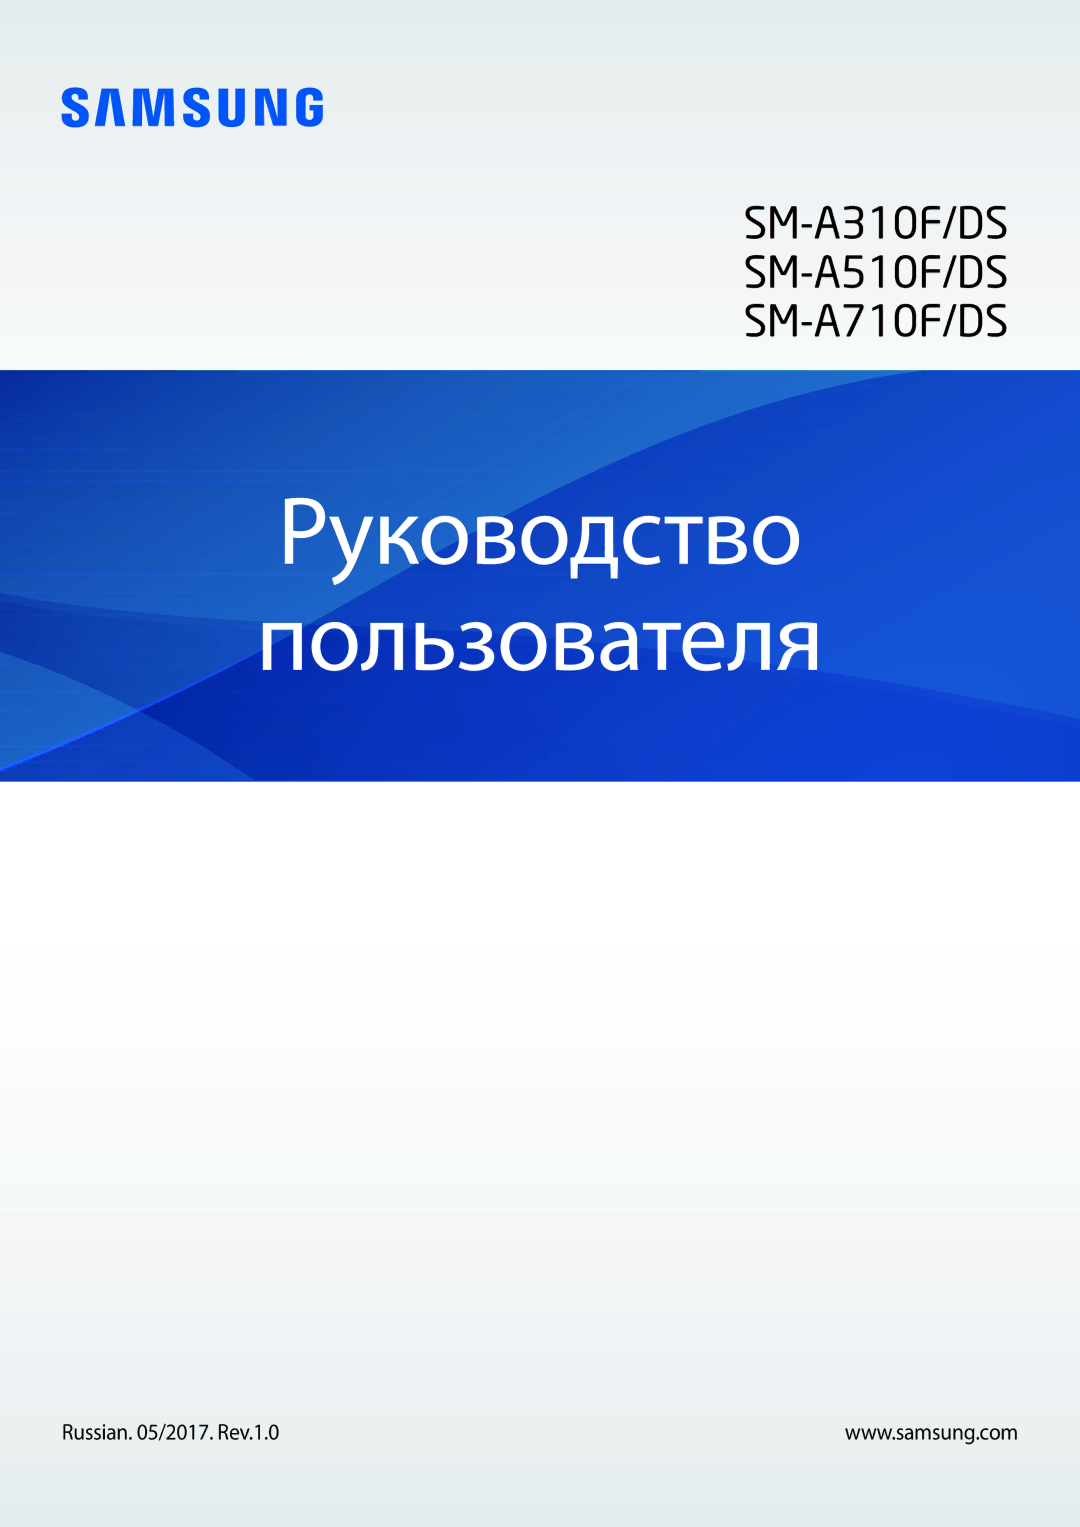 Samsung SM-A310FZWDSER, SM-A310FZKDSER, SM-A310FEDDSER, SM-A310FZDDSER manual Руководство Пользователя 